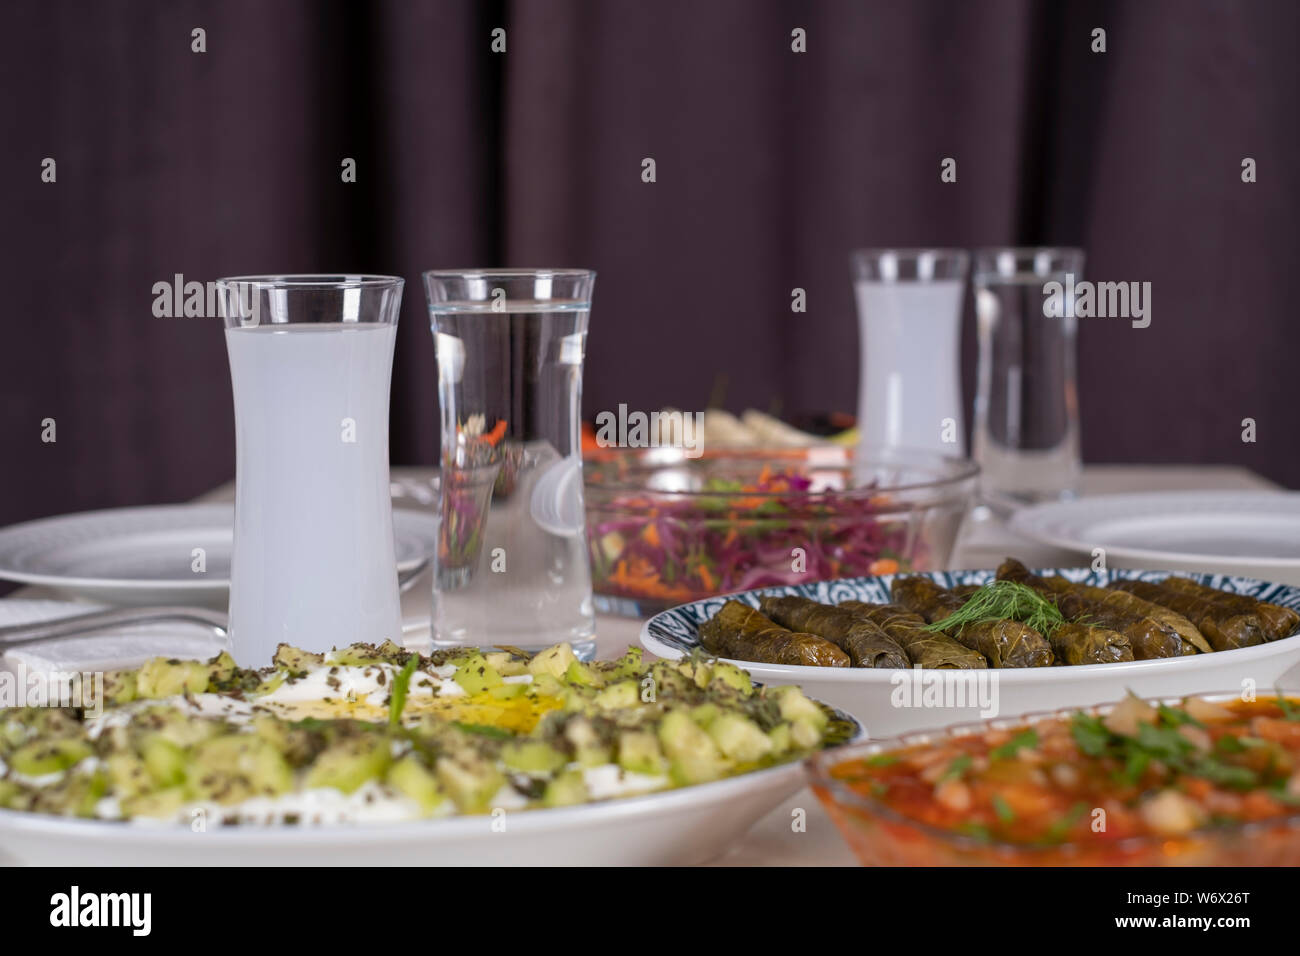 Türkische und griechische traditionelle Esstisch mit speziellen Alkohol trinken Raki. Ouzo und türkischen Raki ist ein trockener Anis aromatisiert Aperitif. Stockfoto